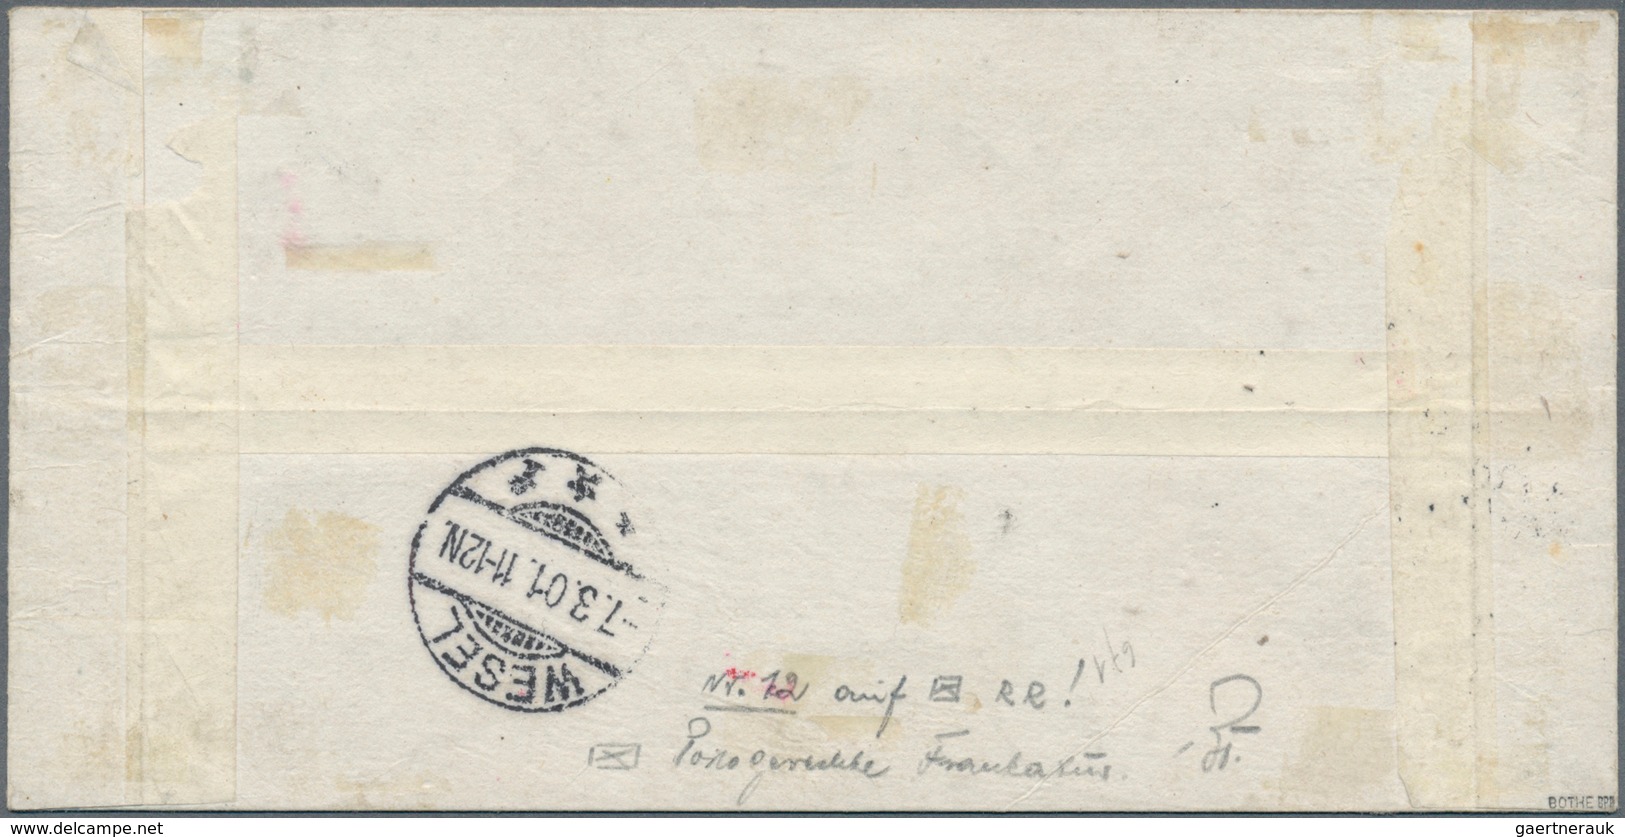 01287 Deutsche Post In China: 1900: 30 Pfg. Germania Orange/schwarz Auf Lachsfarben, Tientsin-Handstempela - China (offices)